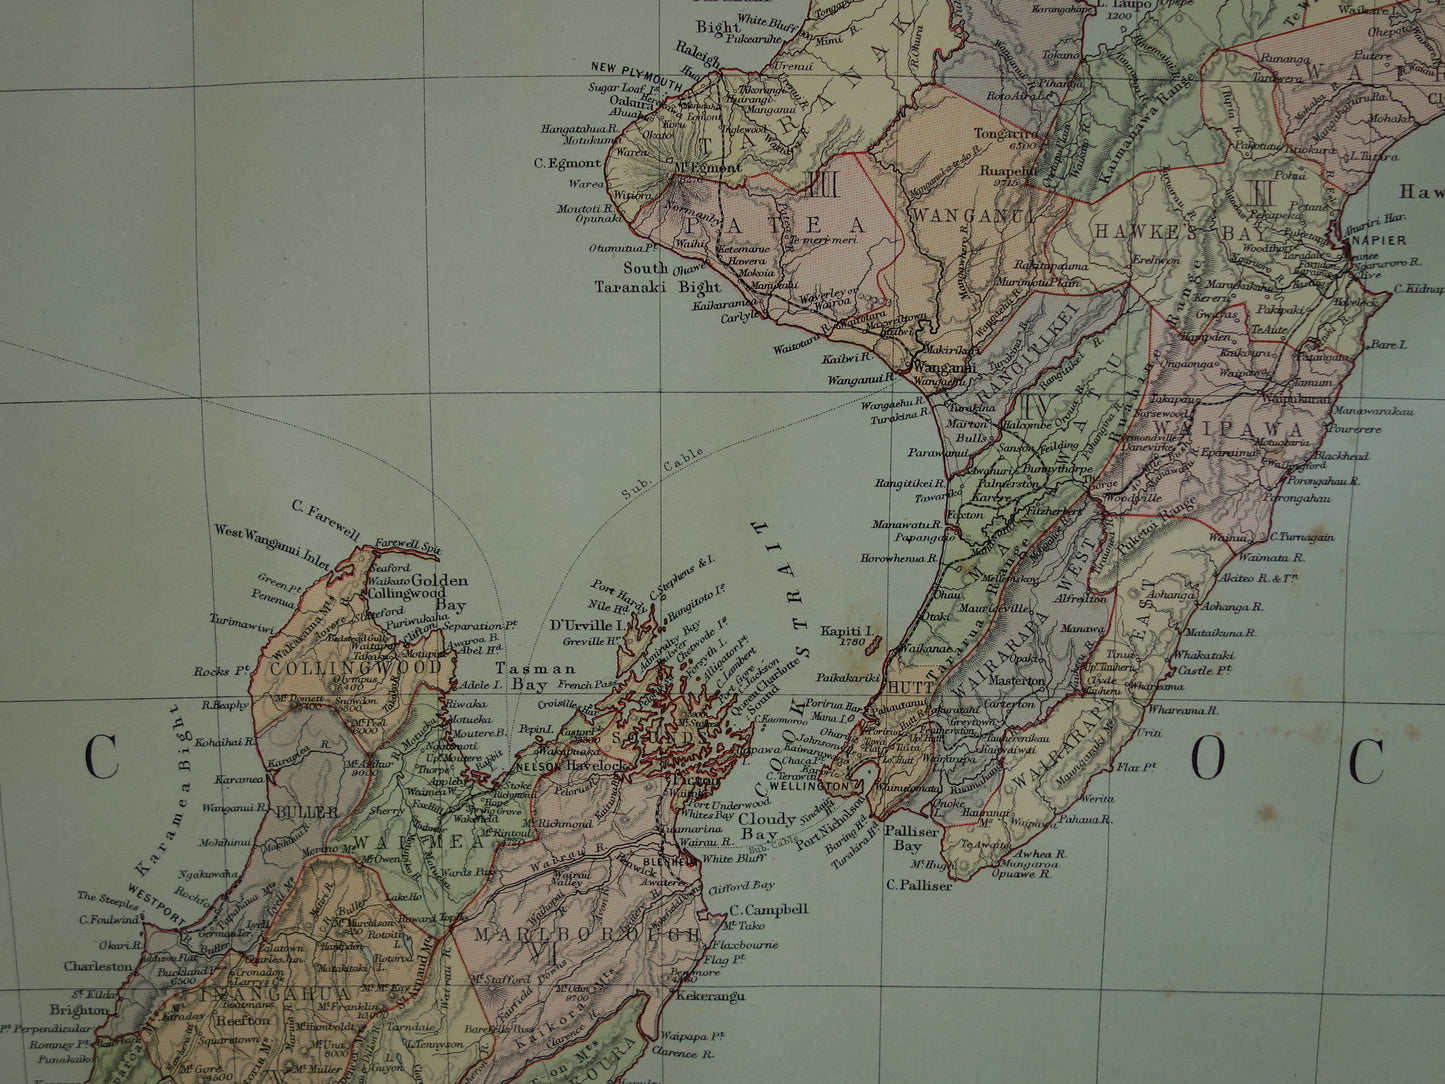 Oude landkaart van Nieuw-Zeeland uit 1890 Mooie origineel antieke kaart New Zealand Vintage landkaarten